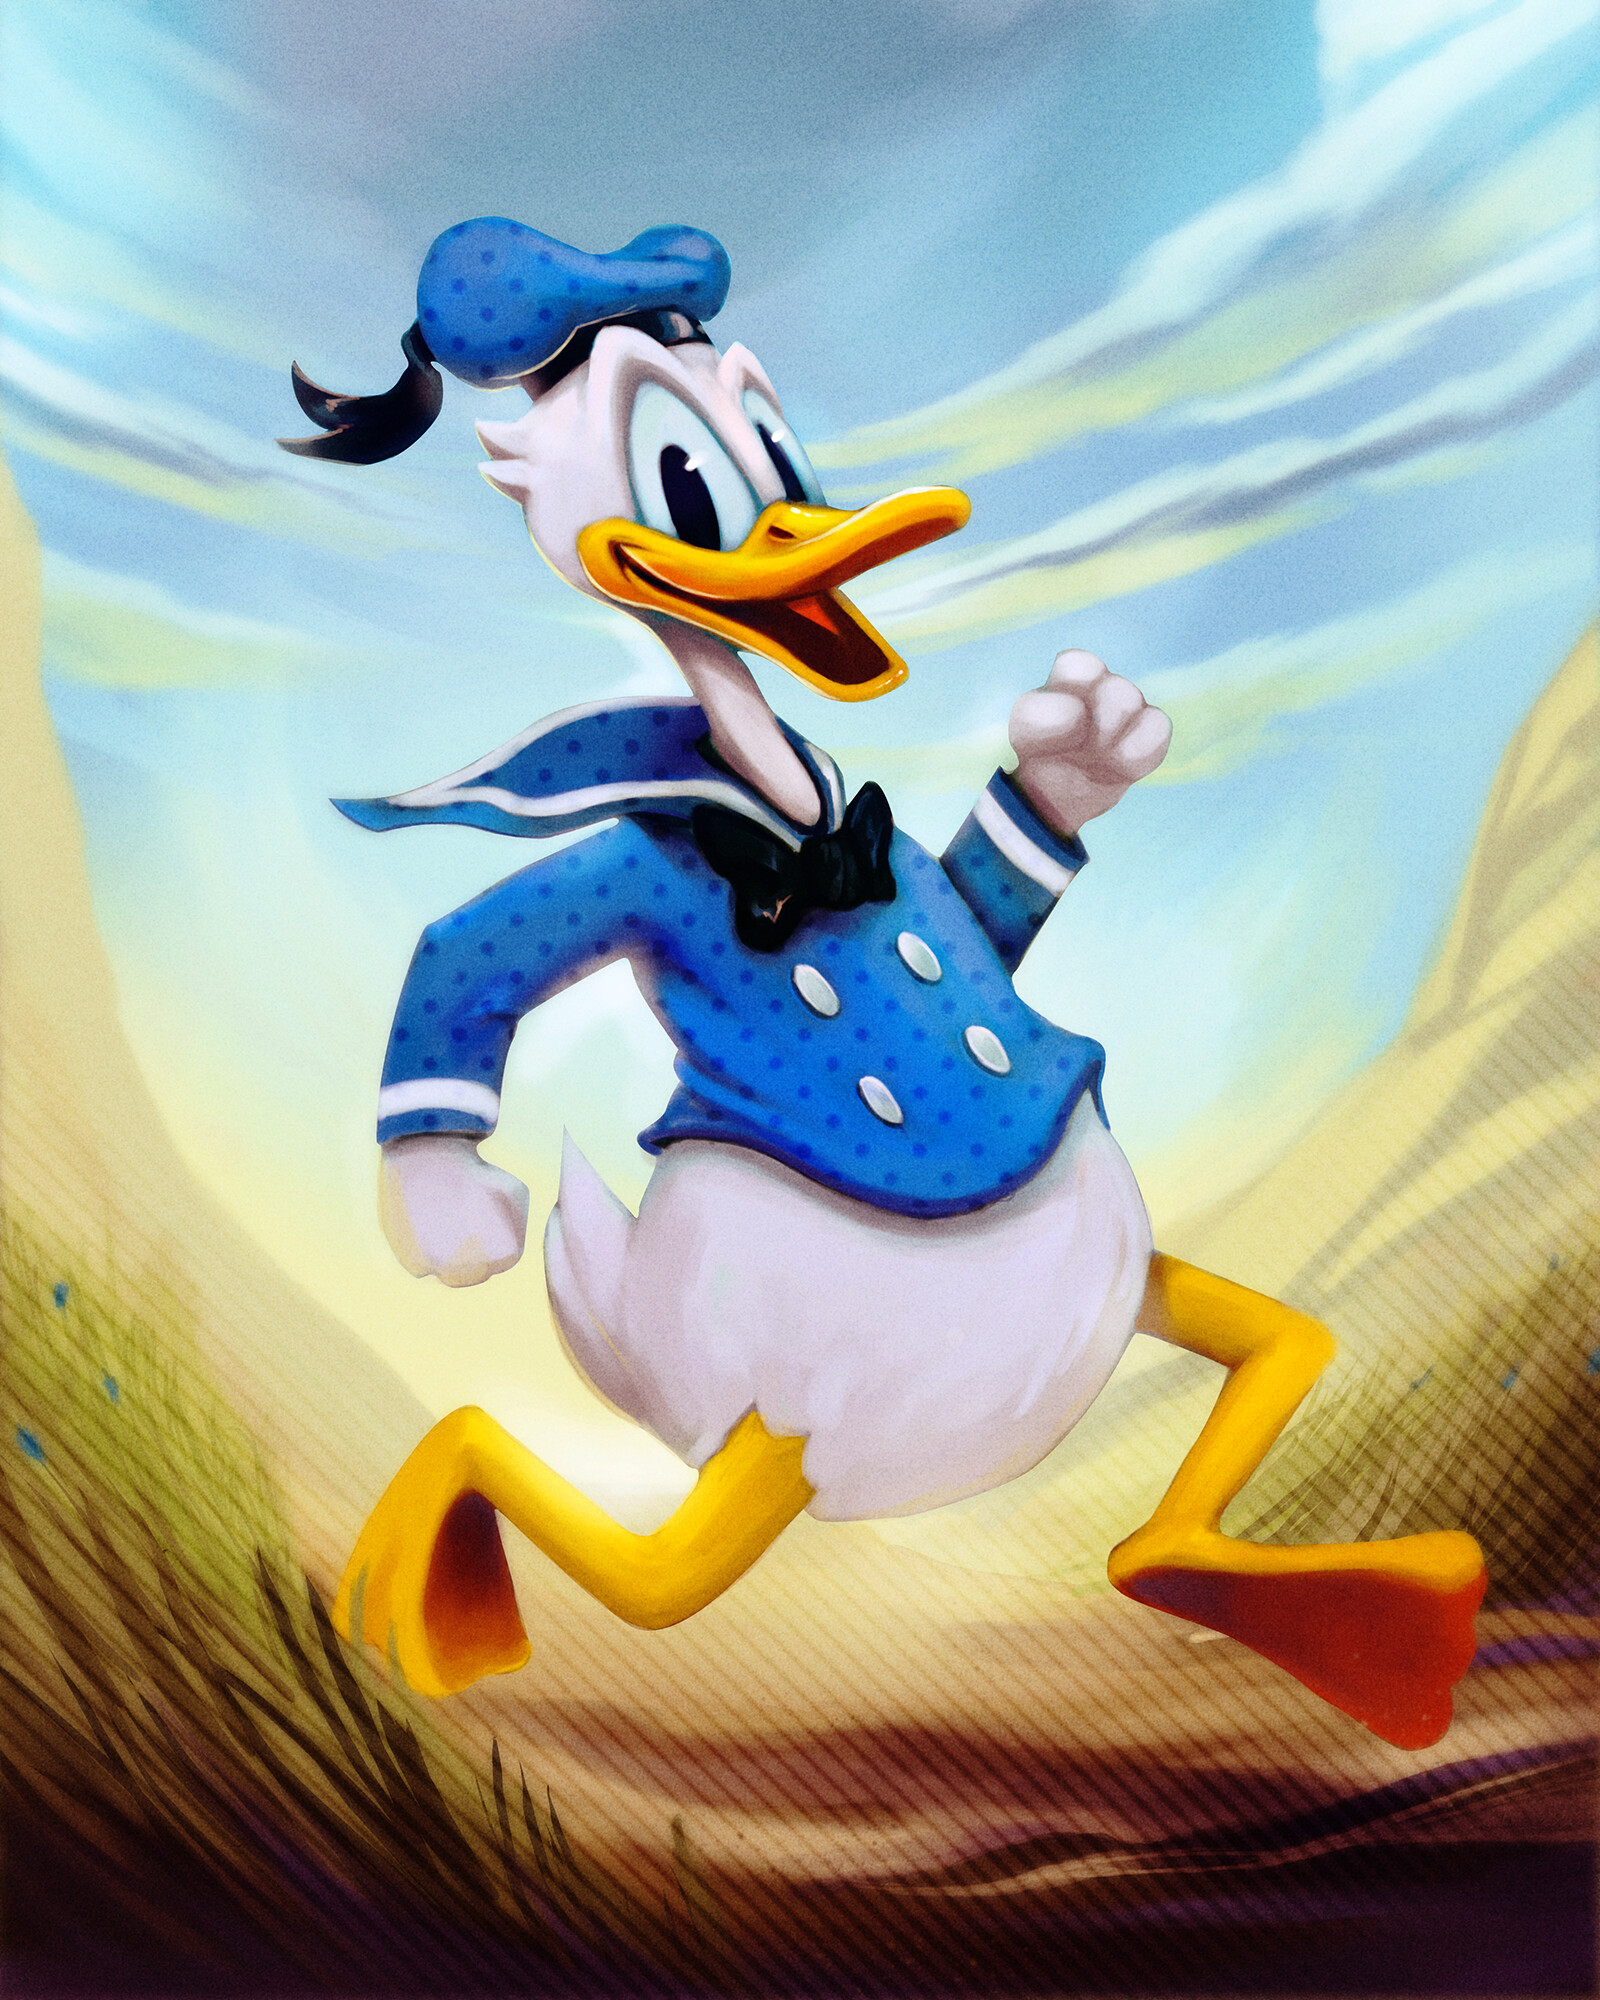 ArtStation - Donald Duck - Fan art